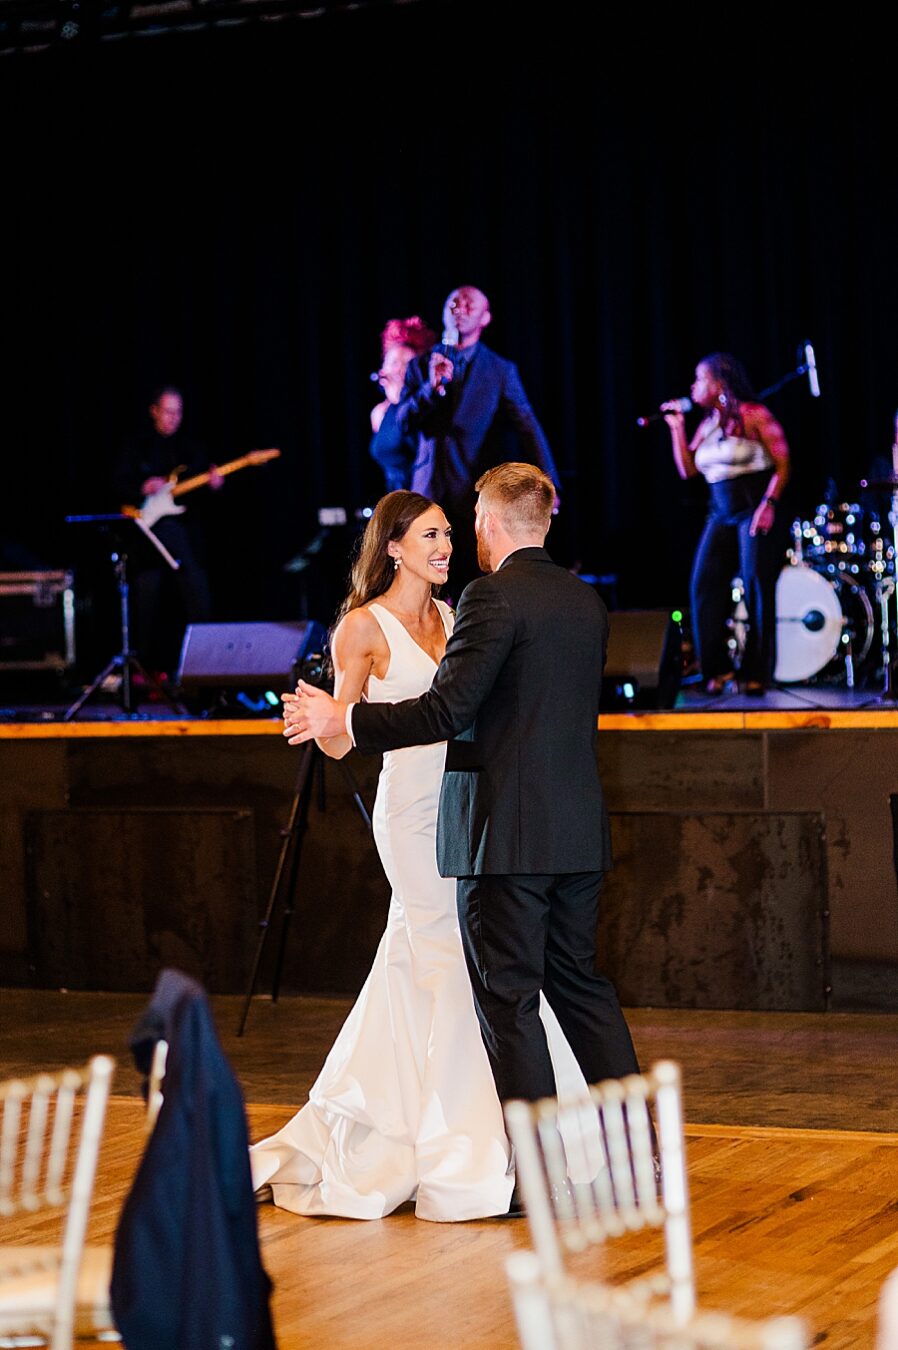 Dancing together at Wedding by Amanda May Photos